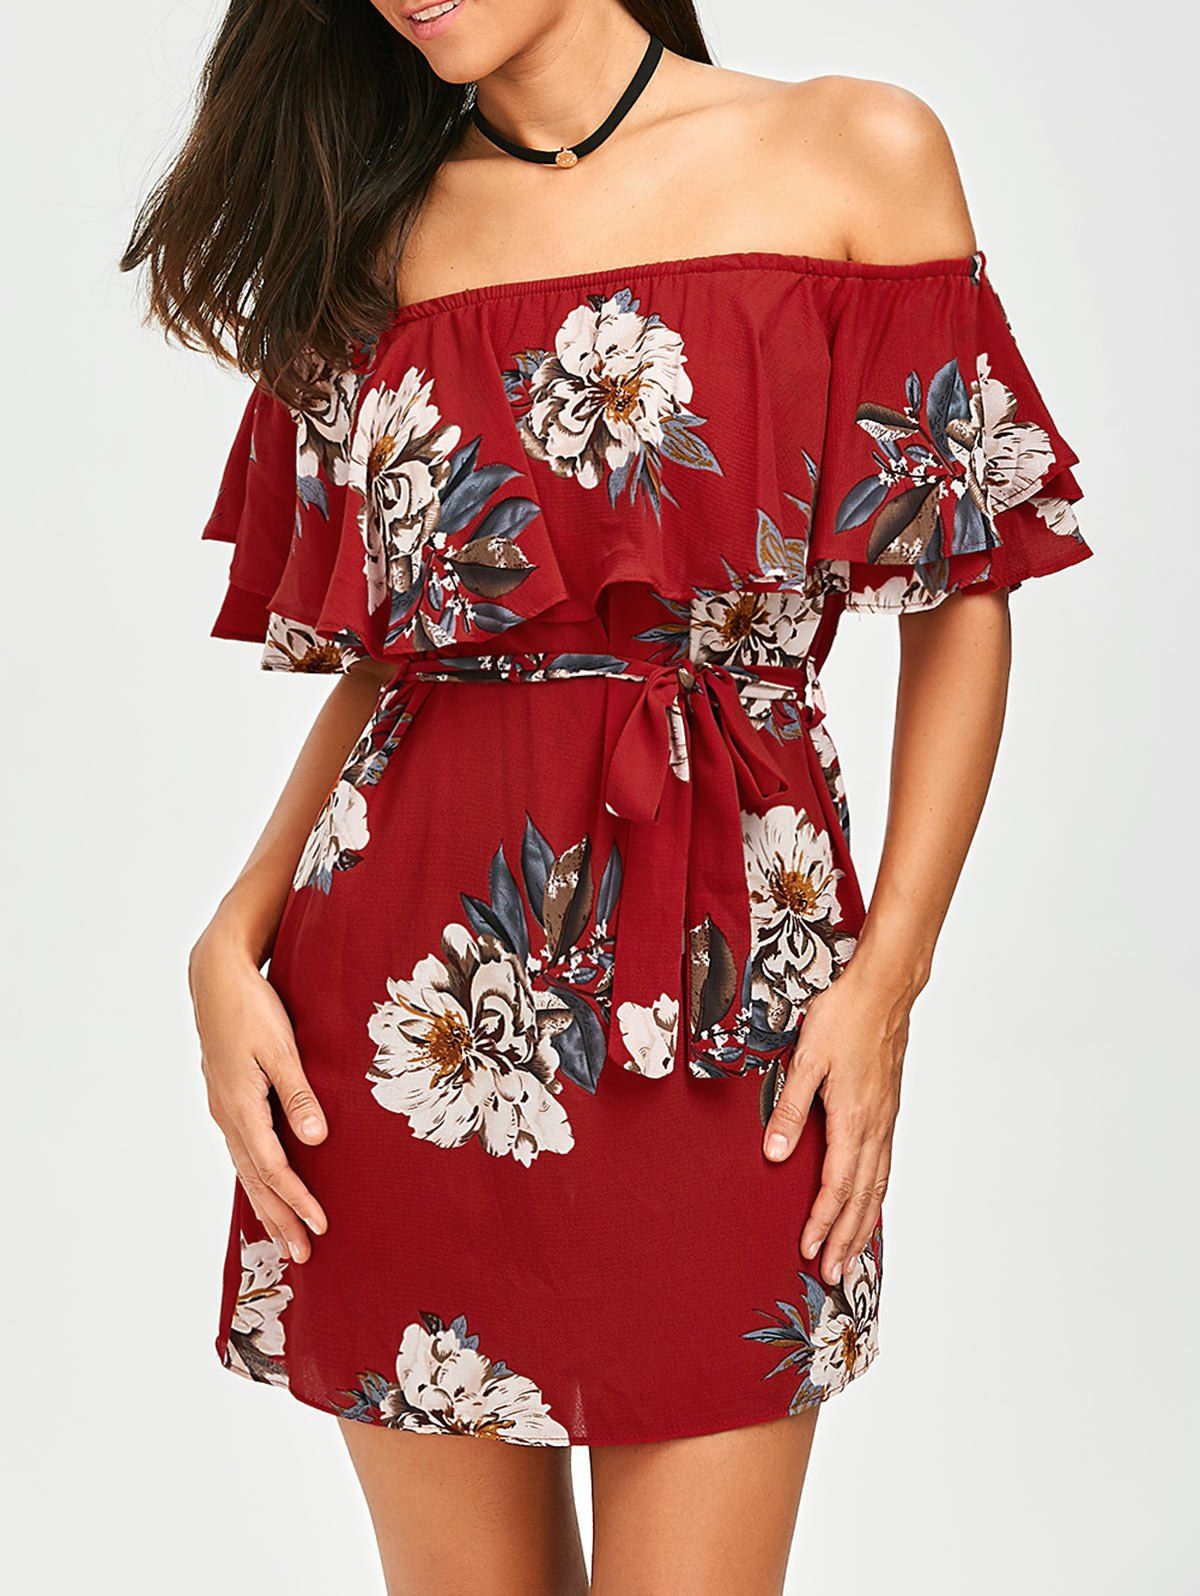 Red M Belted Off The Shoulder Flounce Summer Dress | RoseGal.com